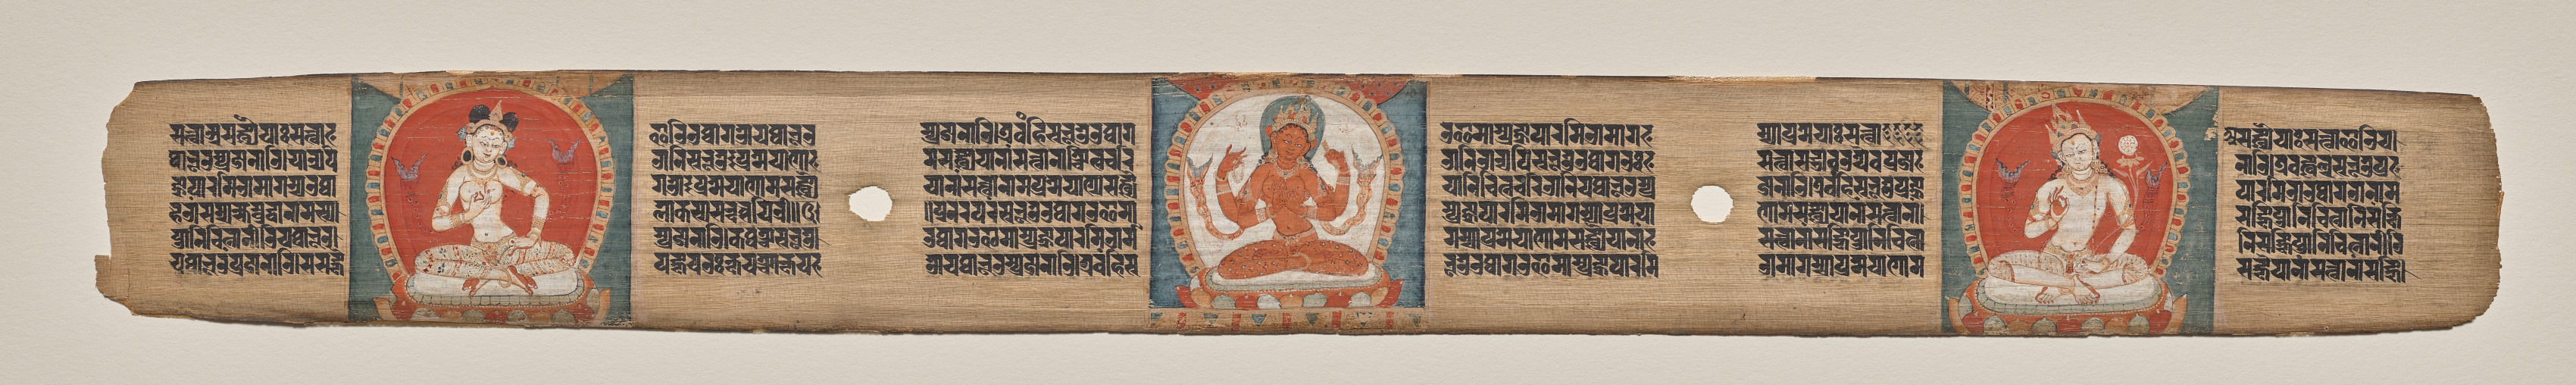 Prajnaparamita flanked by a white female figure and a white bodhisattva, folio 90 (recto), from a Manuscript of the Perfection of Wisdom in Eight Thousand Lines (Ashtasahasrika Prajnaparamita-sutra)